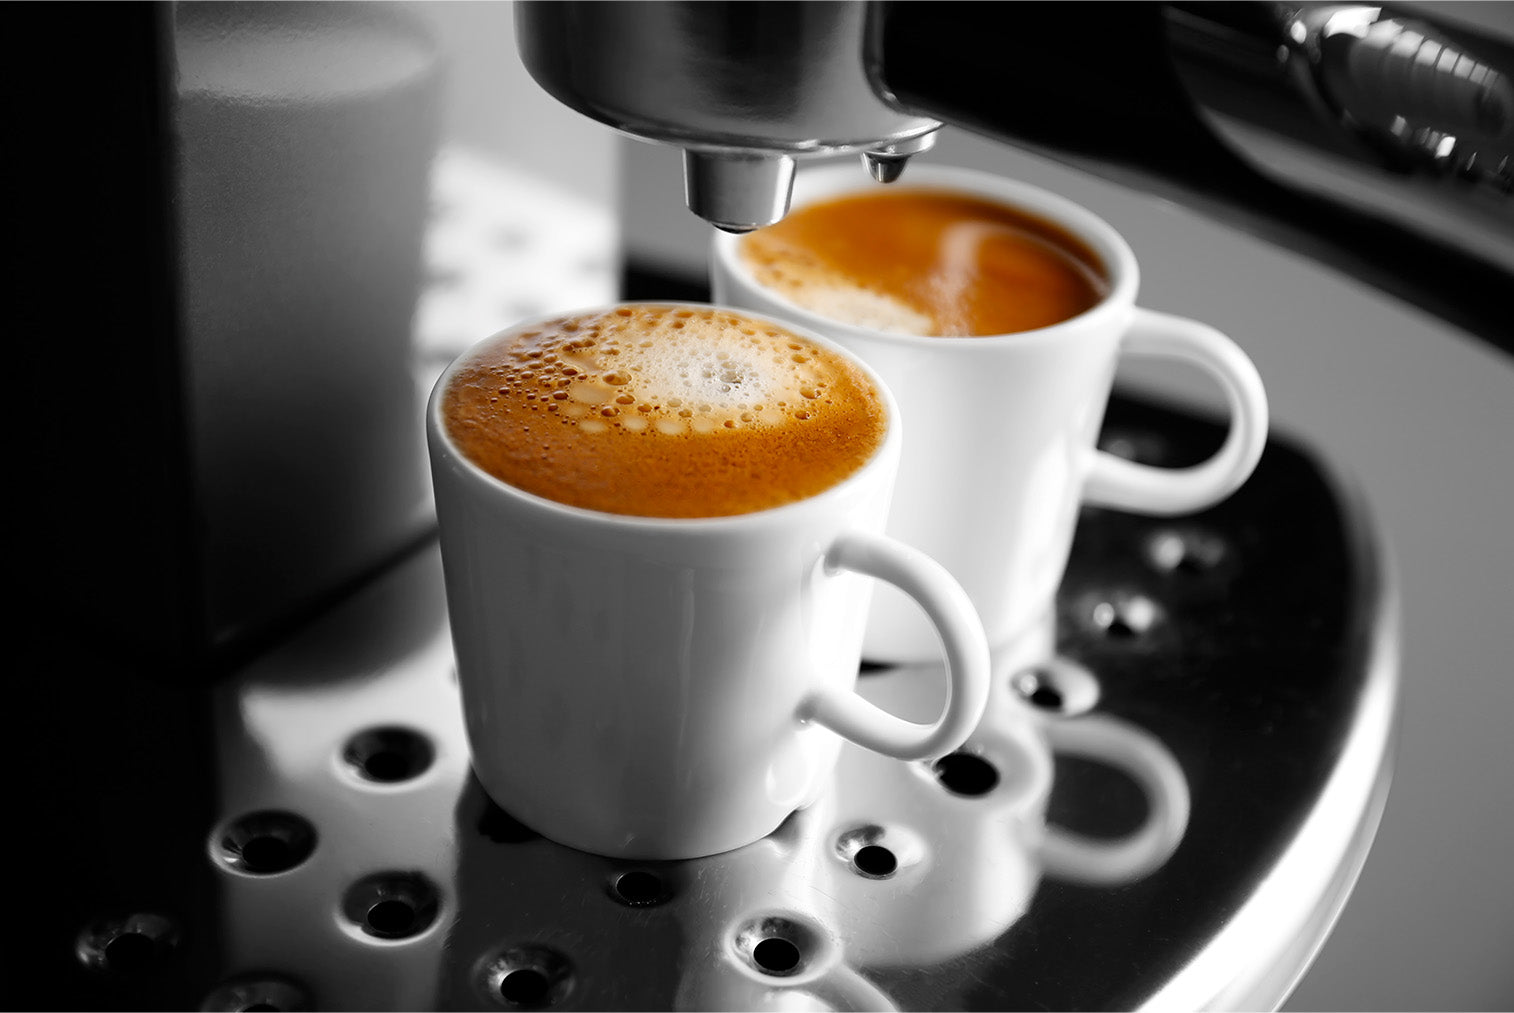 Sprievodca prípravy kávy: Aké sú druhy kávy a spôsoby prípravy?